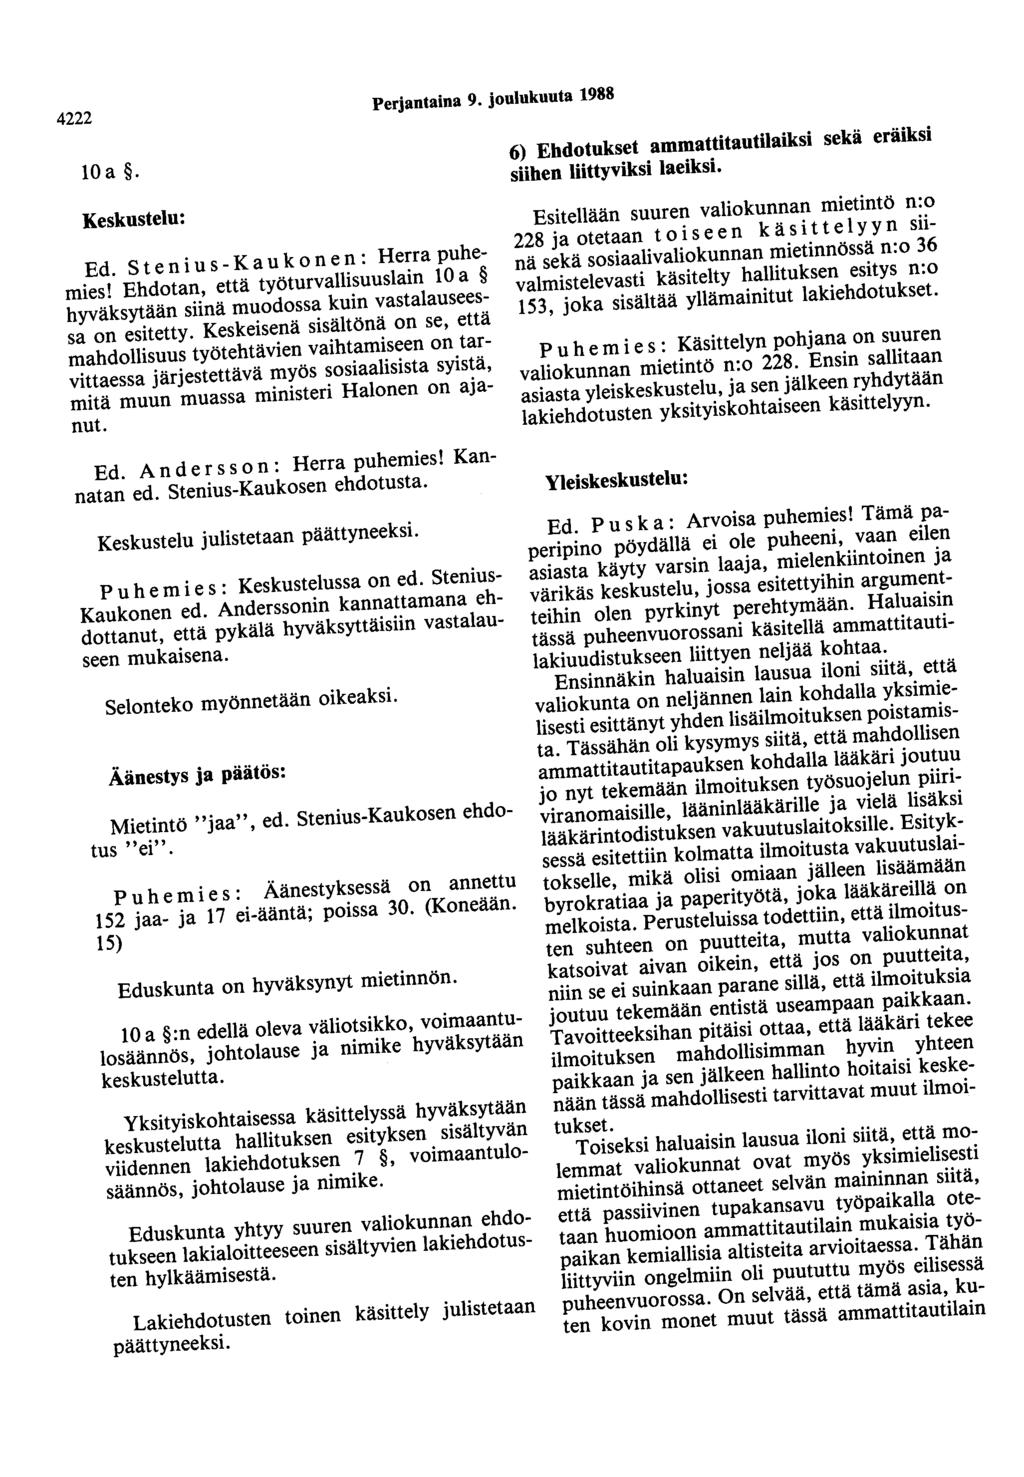 4222 Perjantaina 9. joulukuuta 1988 loa. Keskustelu: Ed. Stenius - K a u k on en : Herra puhemies! Ehdotan, että työturvallisuuslain 10 a hyväksytään siinä muodossa kuin vastalauseessa on esitetty.